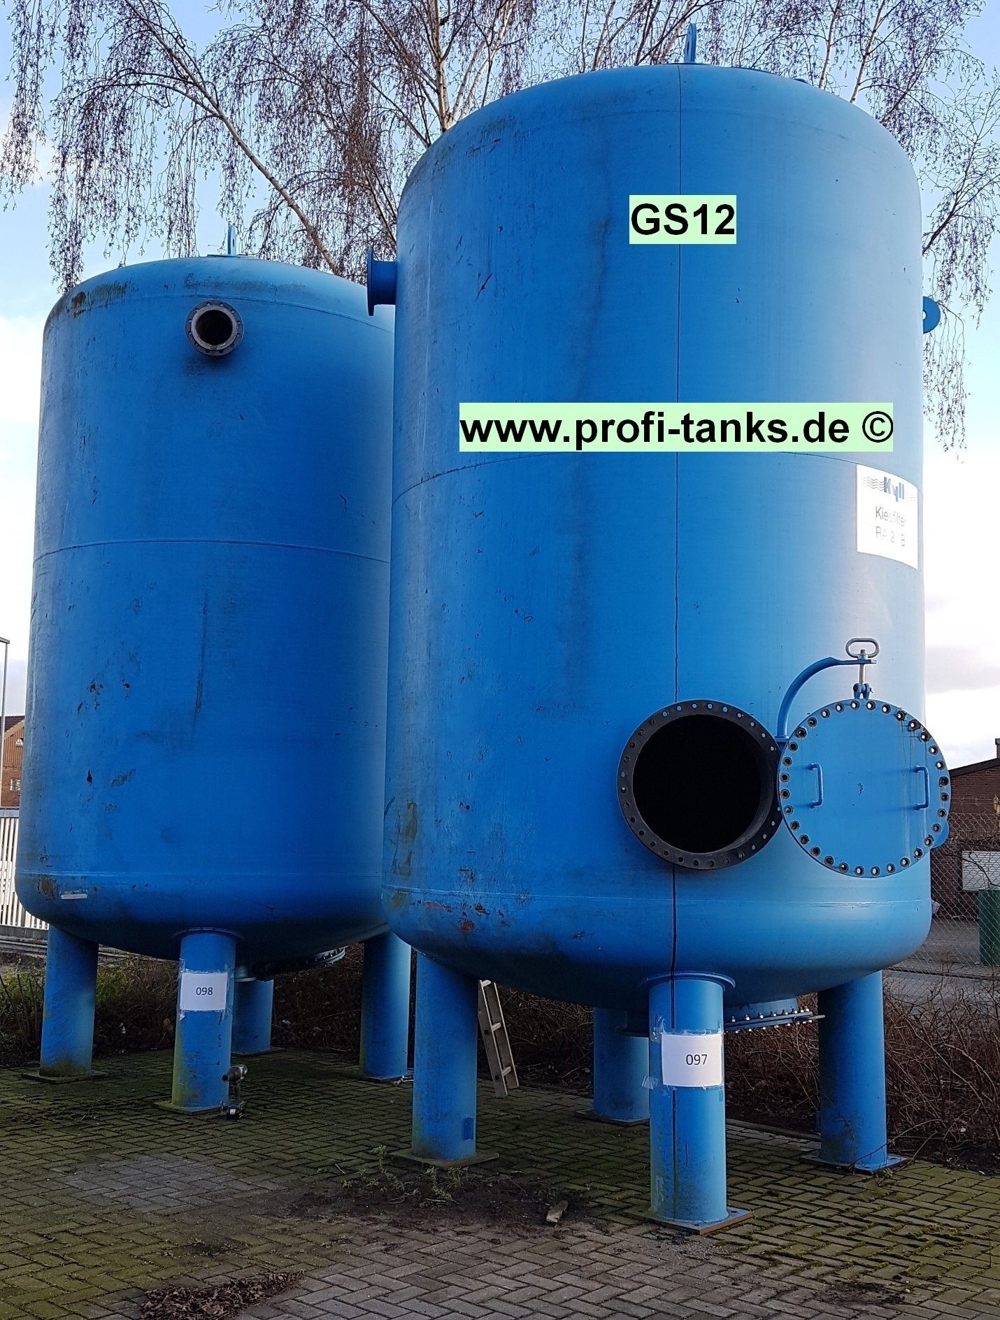 GS12 gebrauchter 26.000 L Stahltank Kiesfilter Drucktank Epoxidharzauskleidung Düsenboden Zisterne